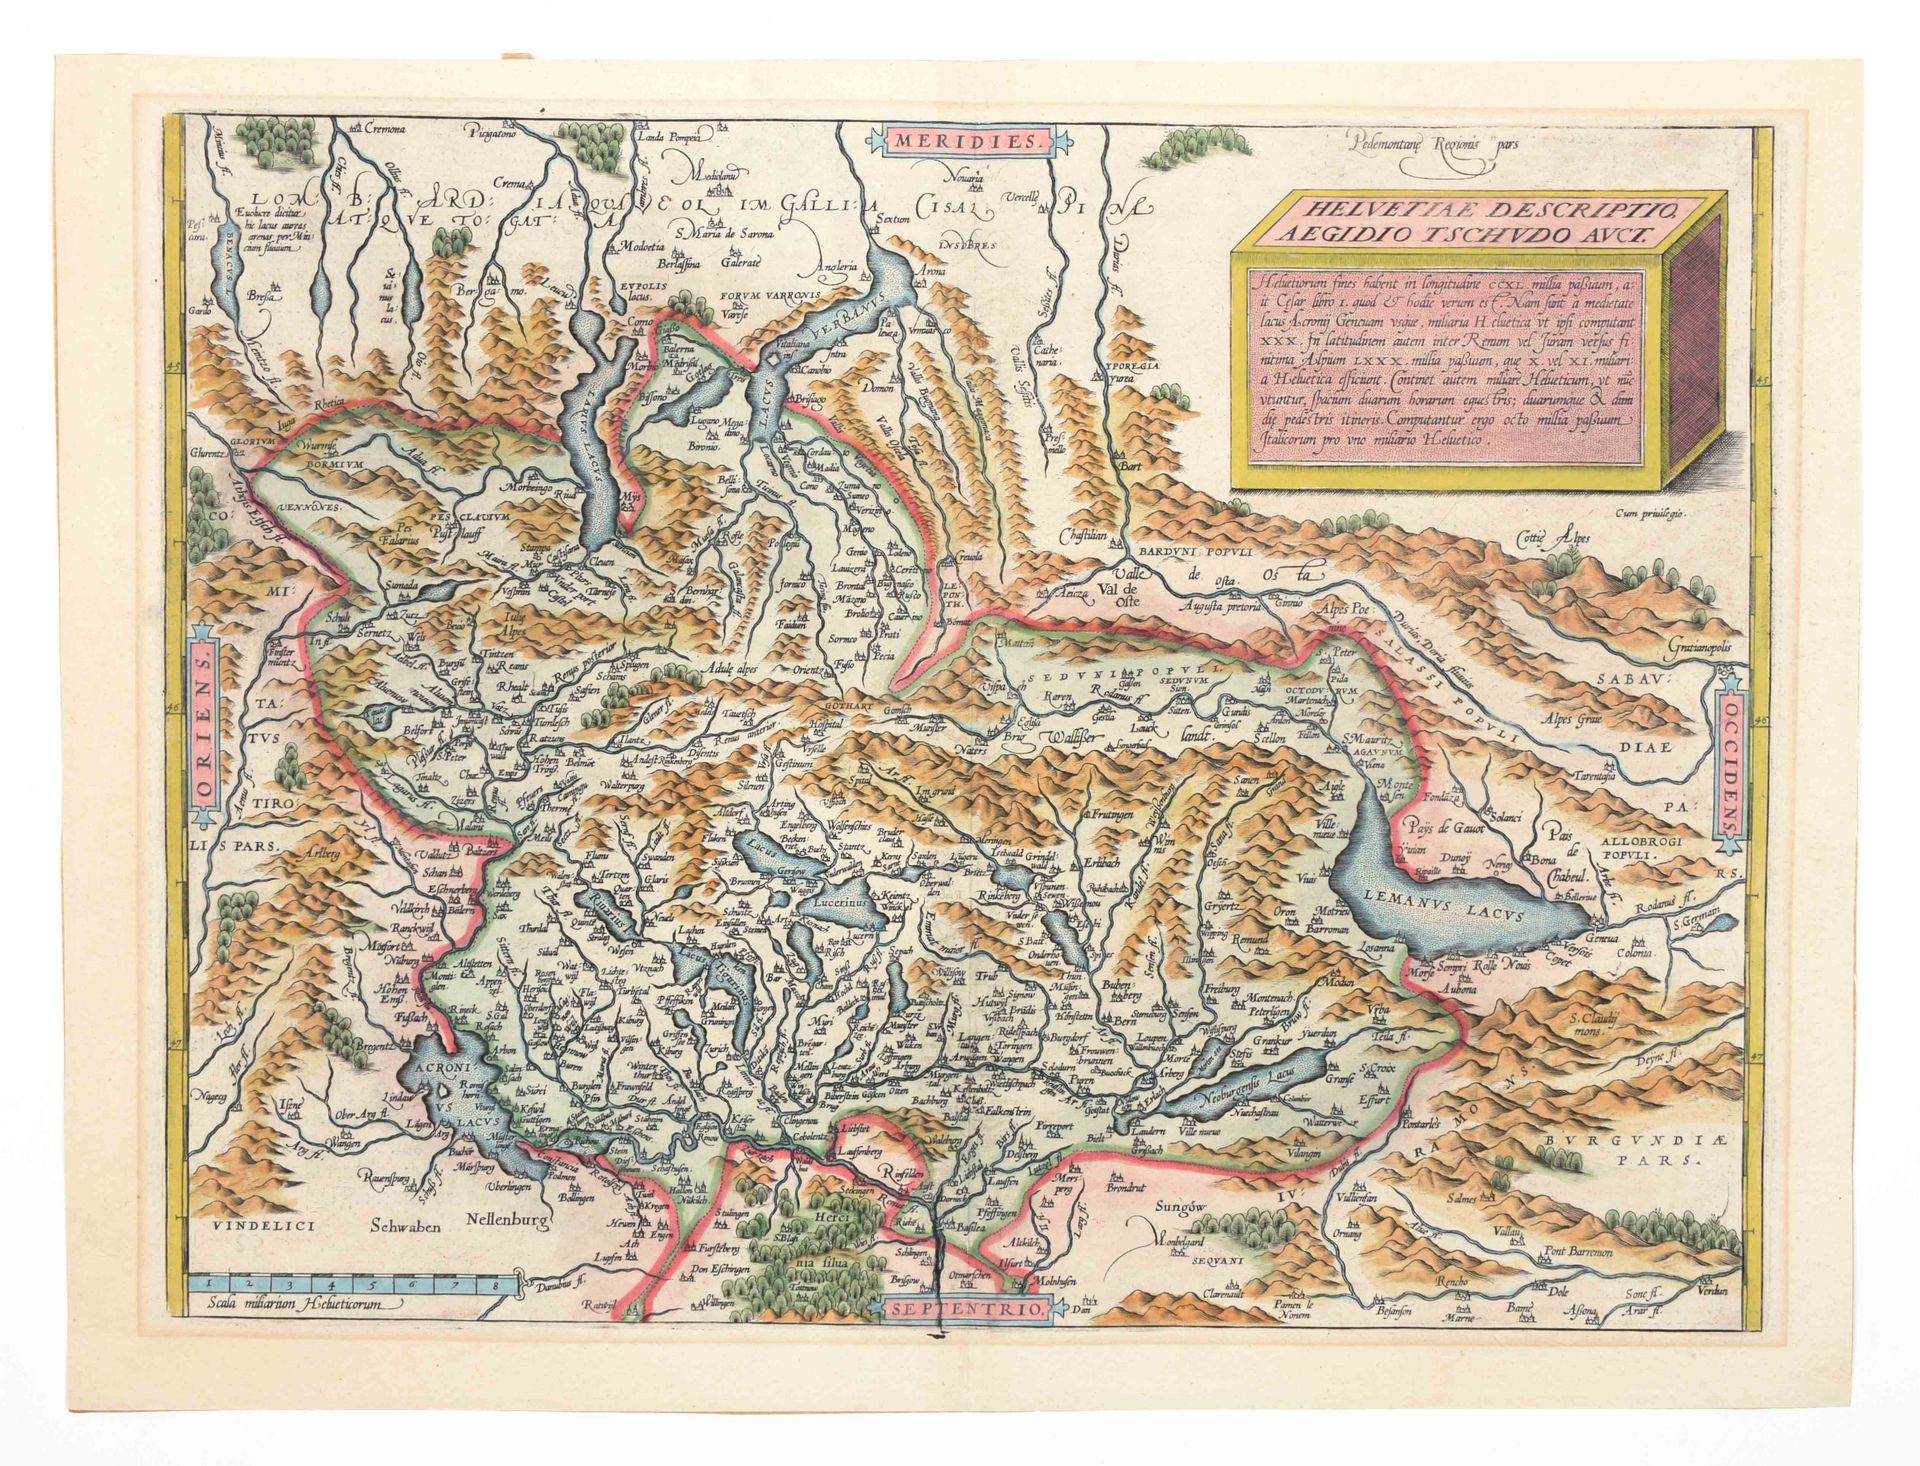 [SWITZERLAND] Helvetiae descriptio Aegidio Tschudo Auct

Handcol. Map (34.5 x 47&hellip;